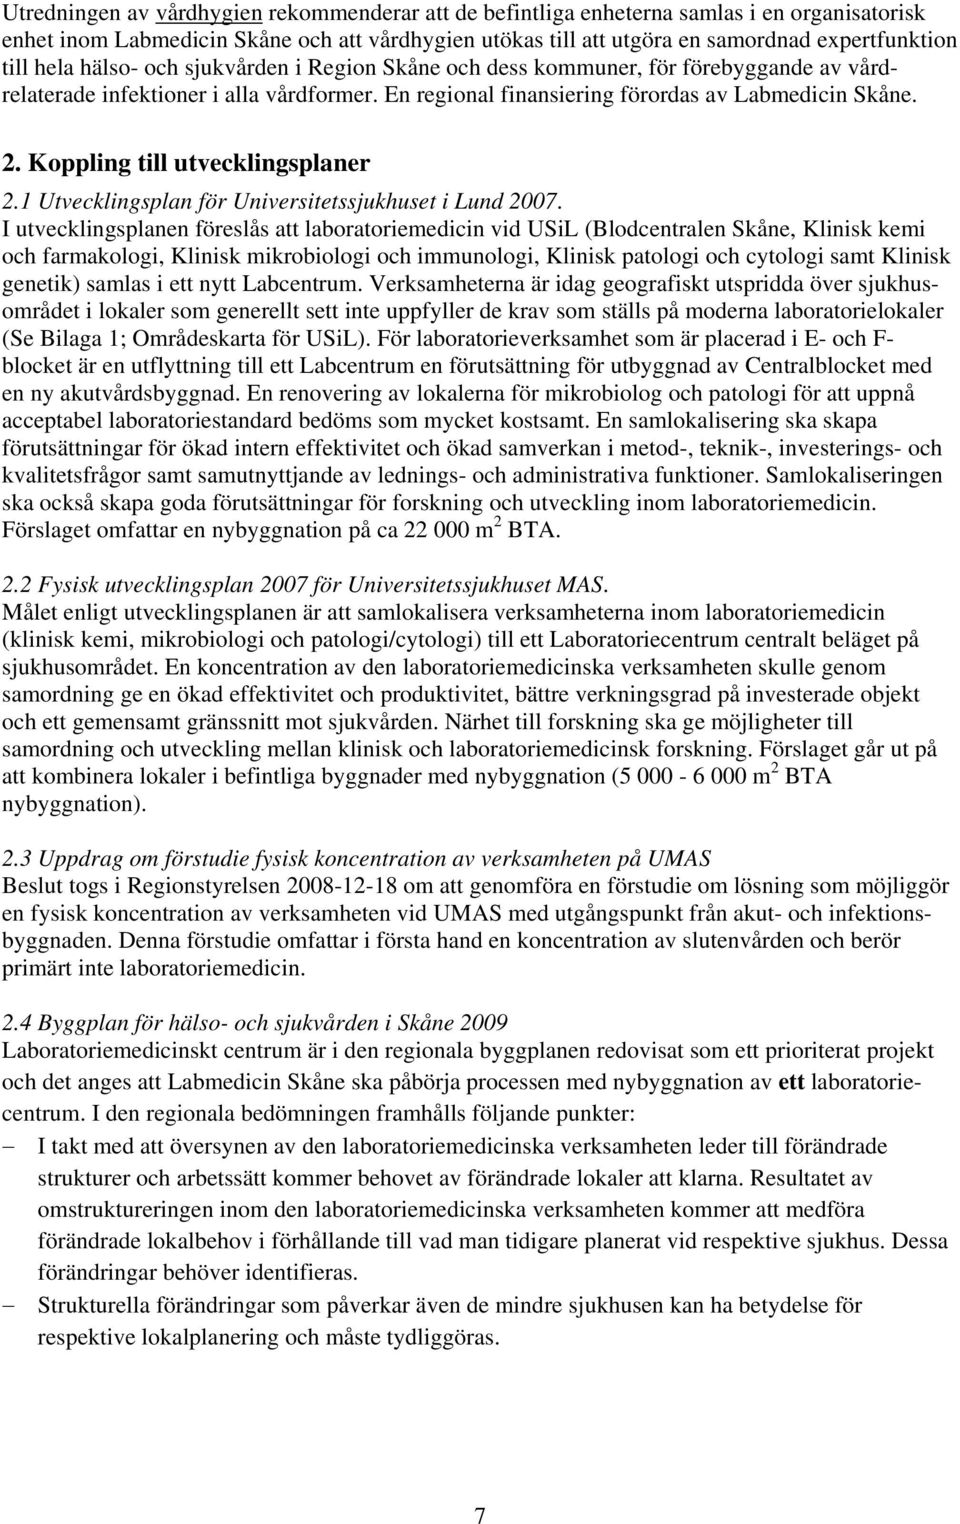 Koppling till utvecklingsplaner 2.1 Utvecklingsplan för Universitetssjukhuset i Lund 2007.